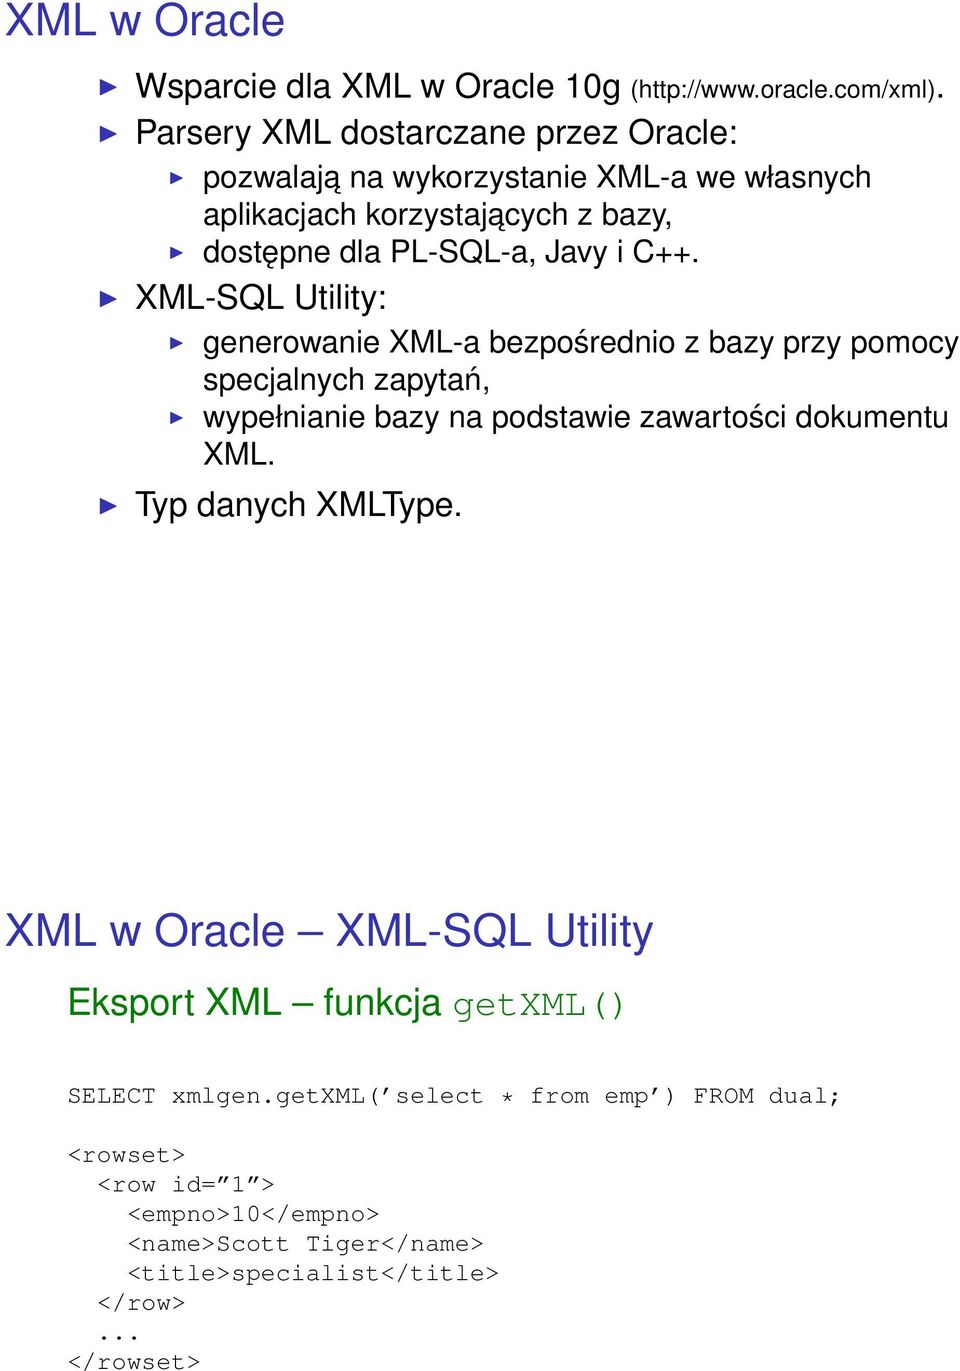 XML-SQL Utility: generowanie XML-a bezpośrednio z bazy przy pomocy specjalnych zapytań, wypełnianie bazy na podstawie zawartości dokumentu XML.